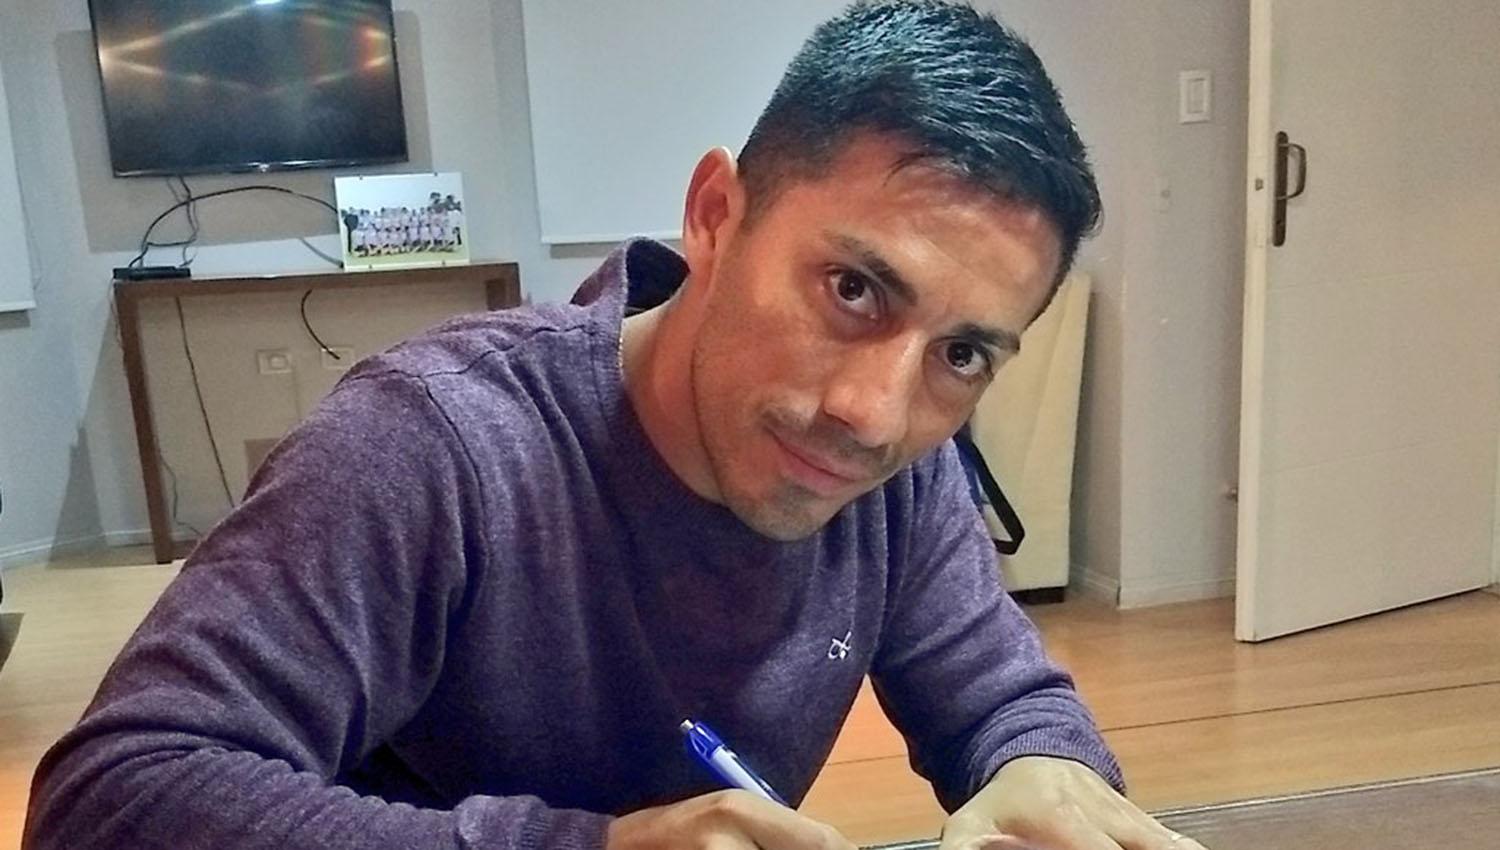 El Bebe Acosta puso su firma y seguirá tres campañas más con el decano.
FOTO TOMADA DE PRENSA CLUB ATLÉTICO TUCUMÁN